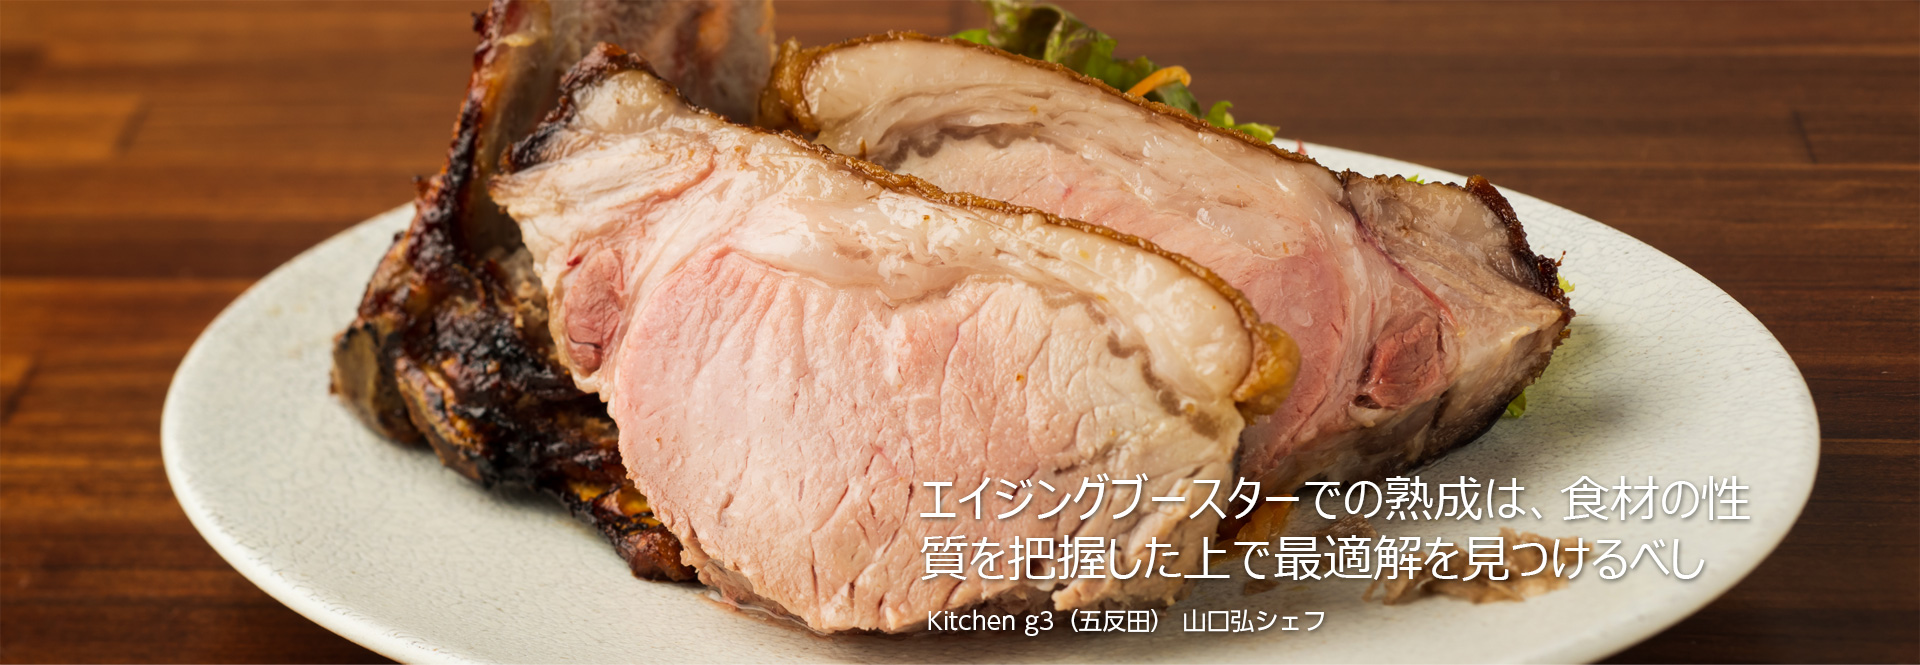 Kitchen g3（五反田）